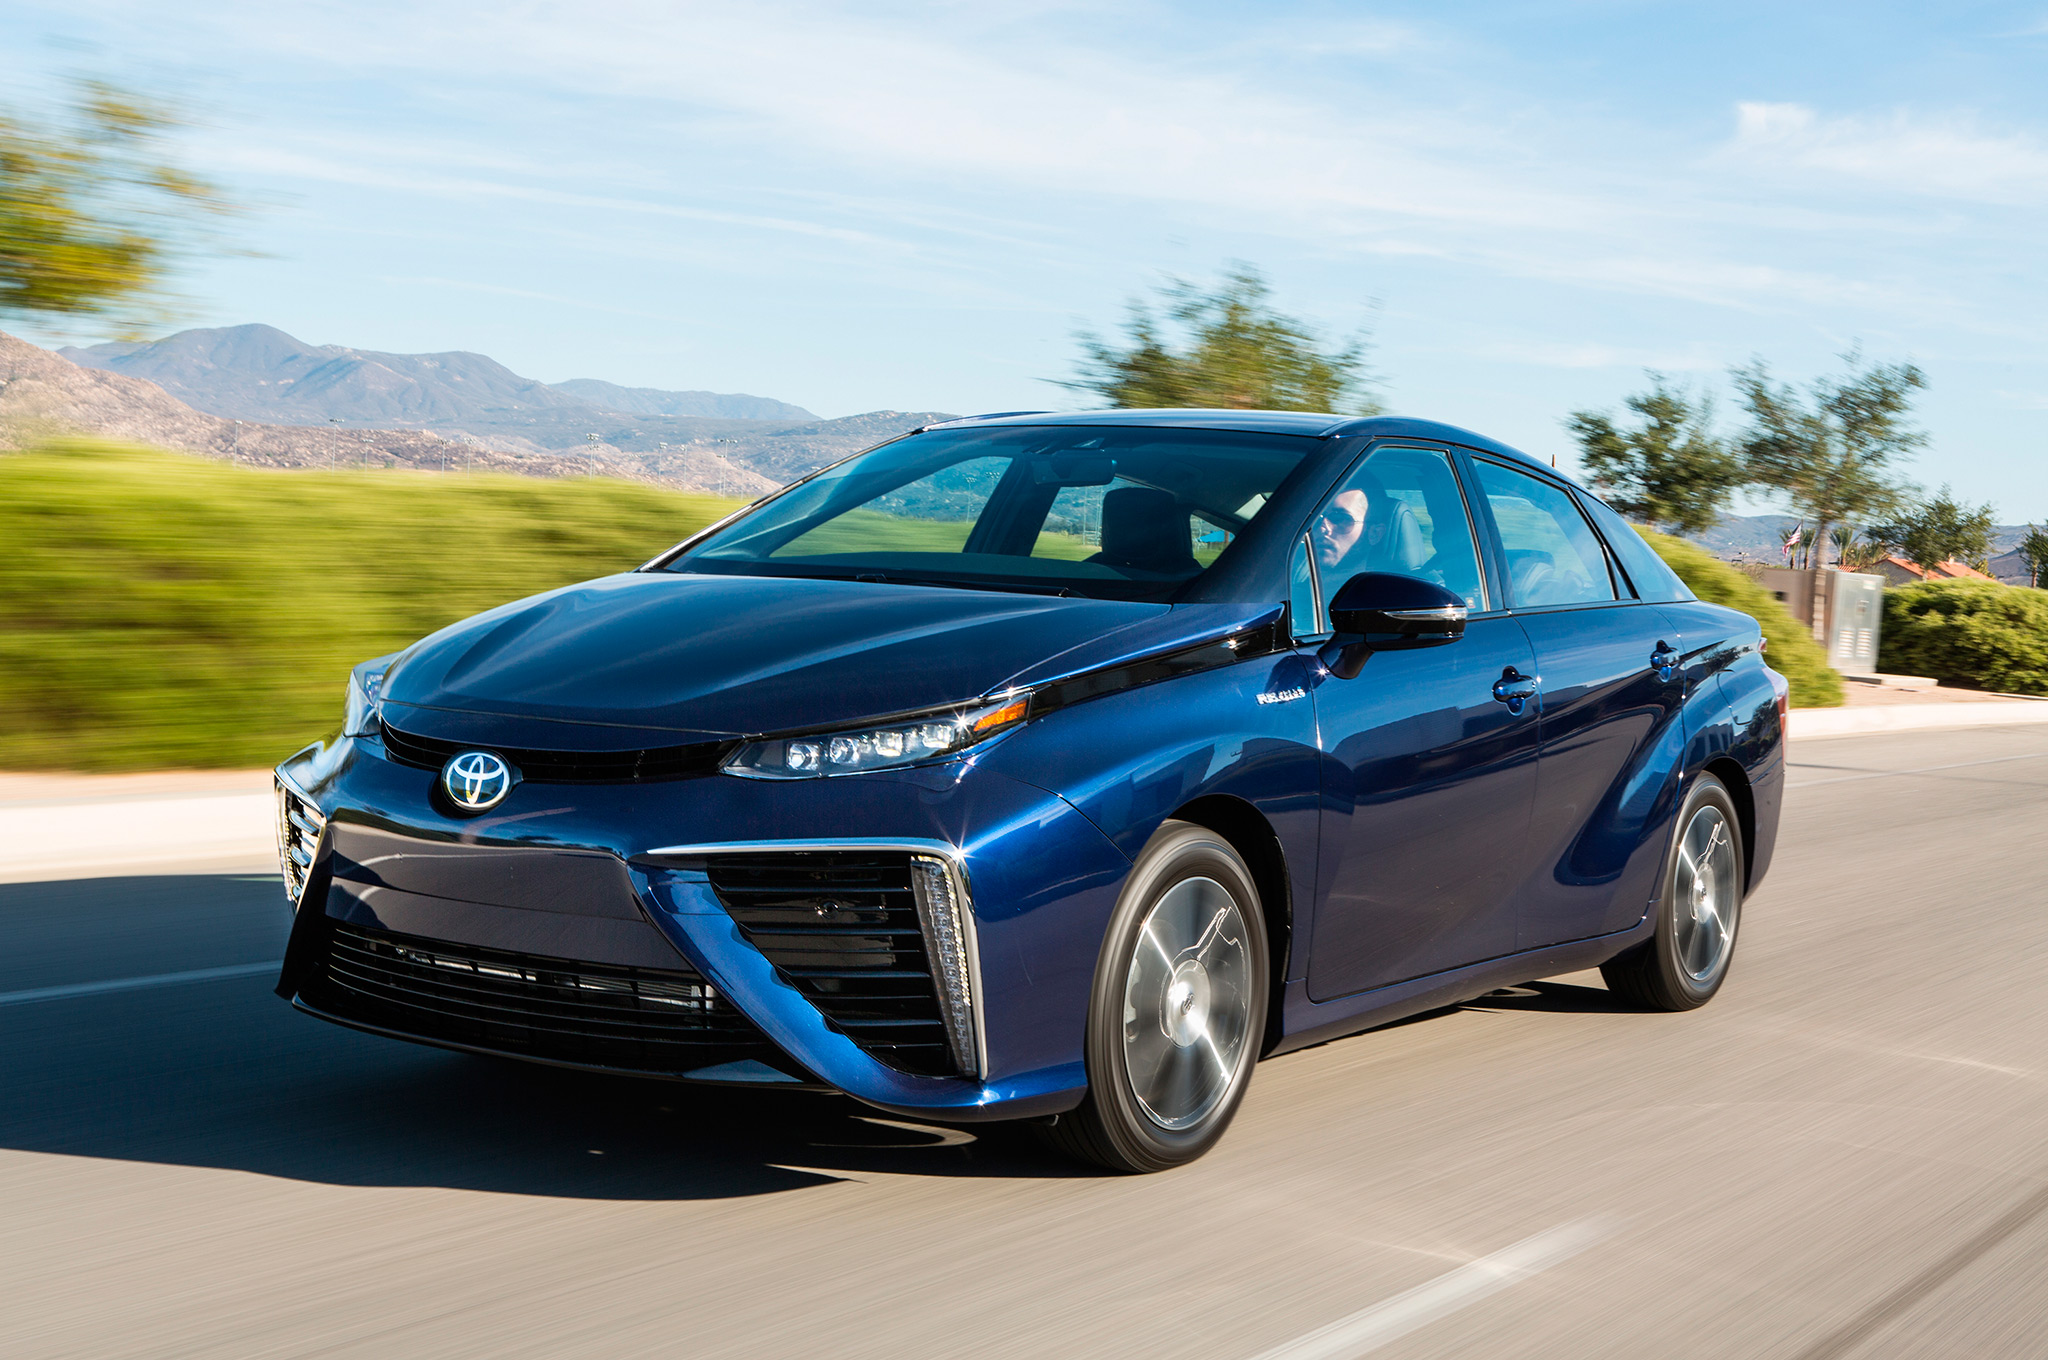 Toyota Mirai chạy fuel-cell, chỉ sử dụng khí hydro và thải ra nước